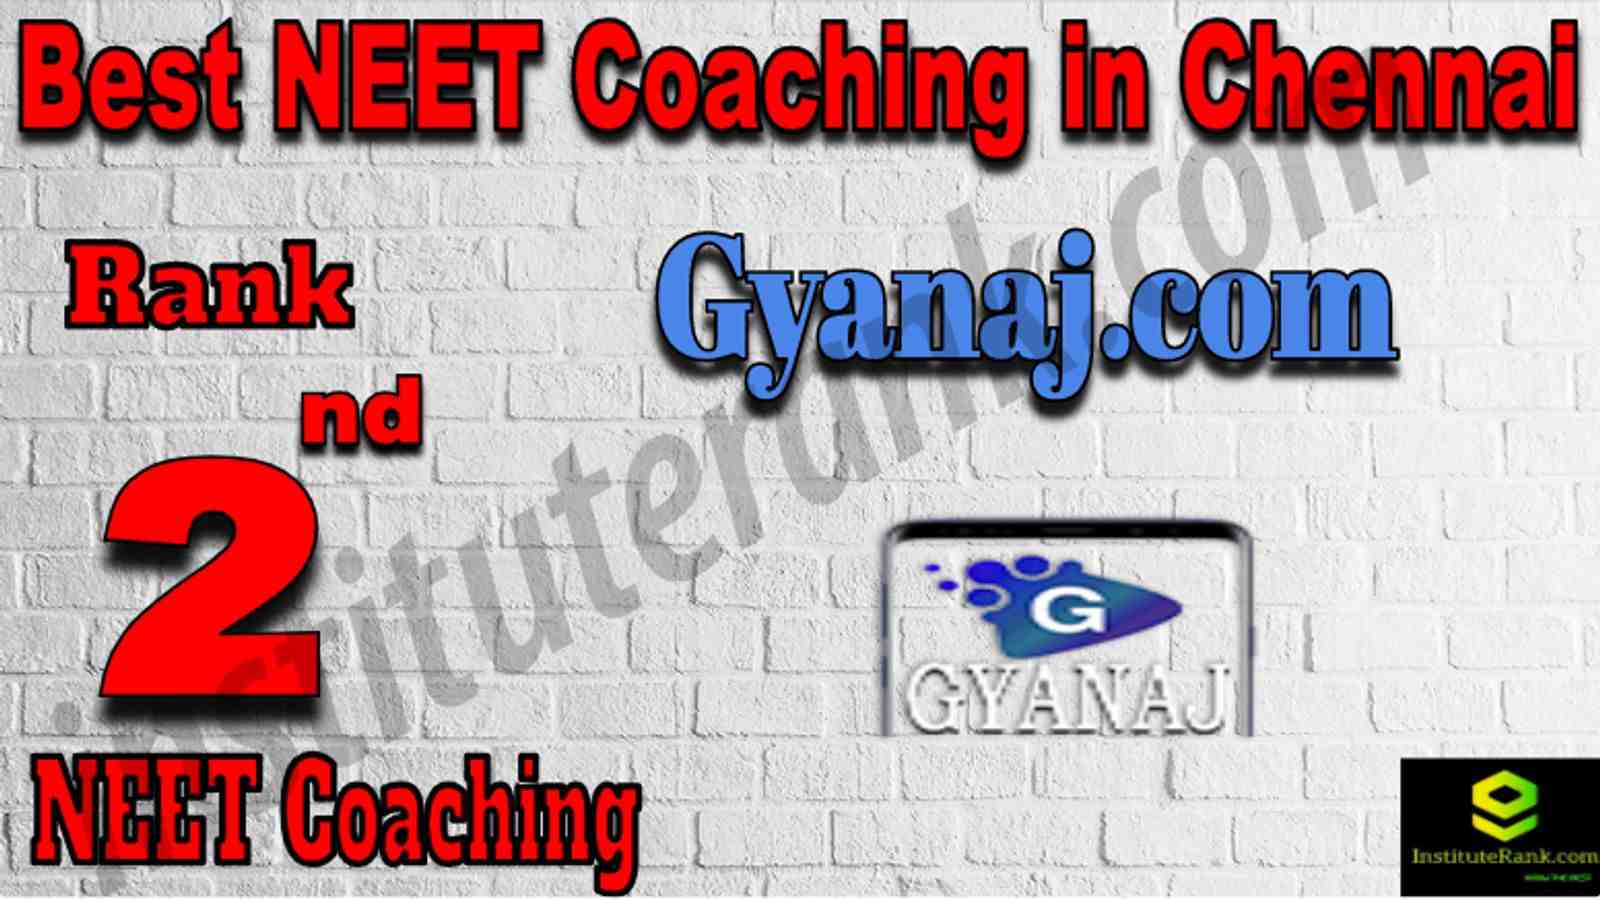 Rank 2 Best NEET Coaching in Chennai